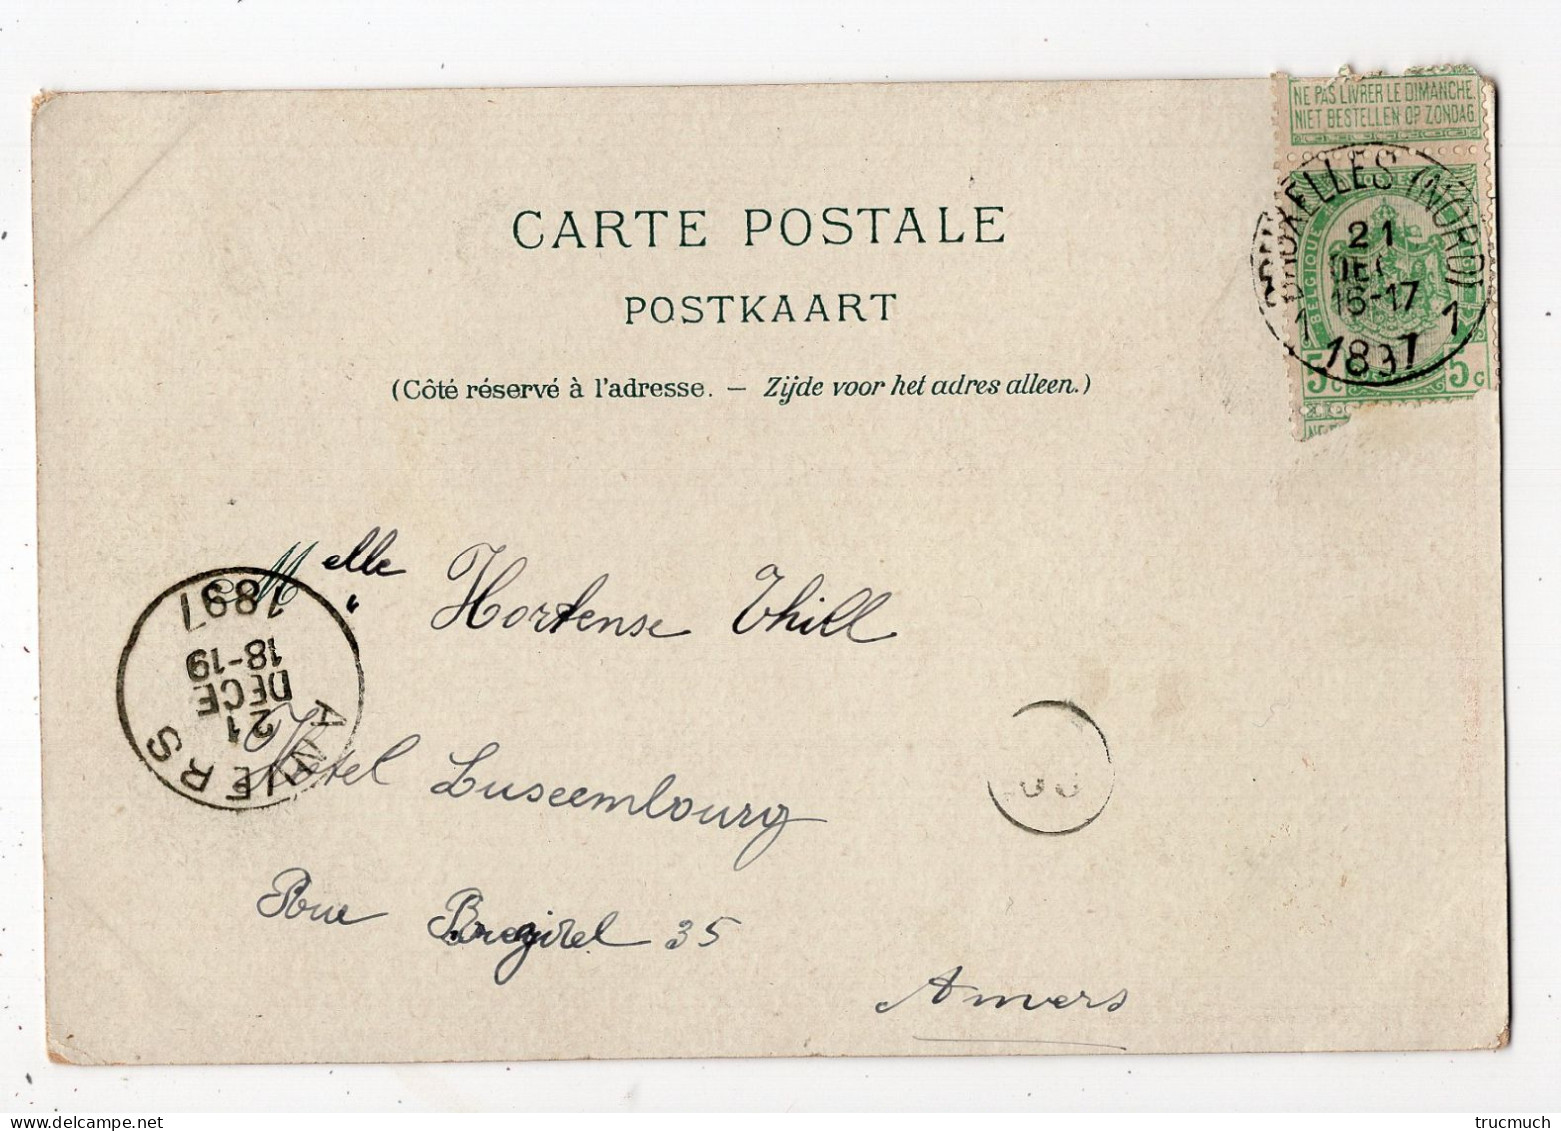 470 - BRUXELLES - Exposition Universelle 1897 *dentellière Flamande *litho* - Monuments